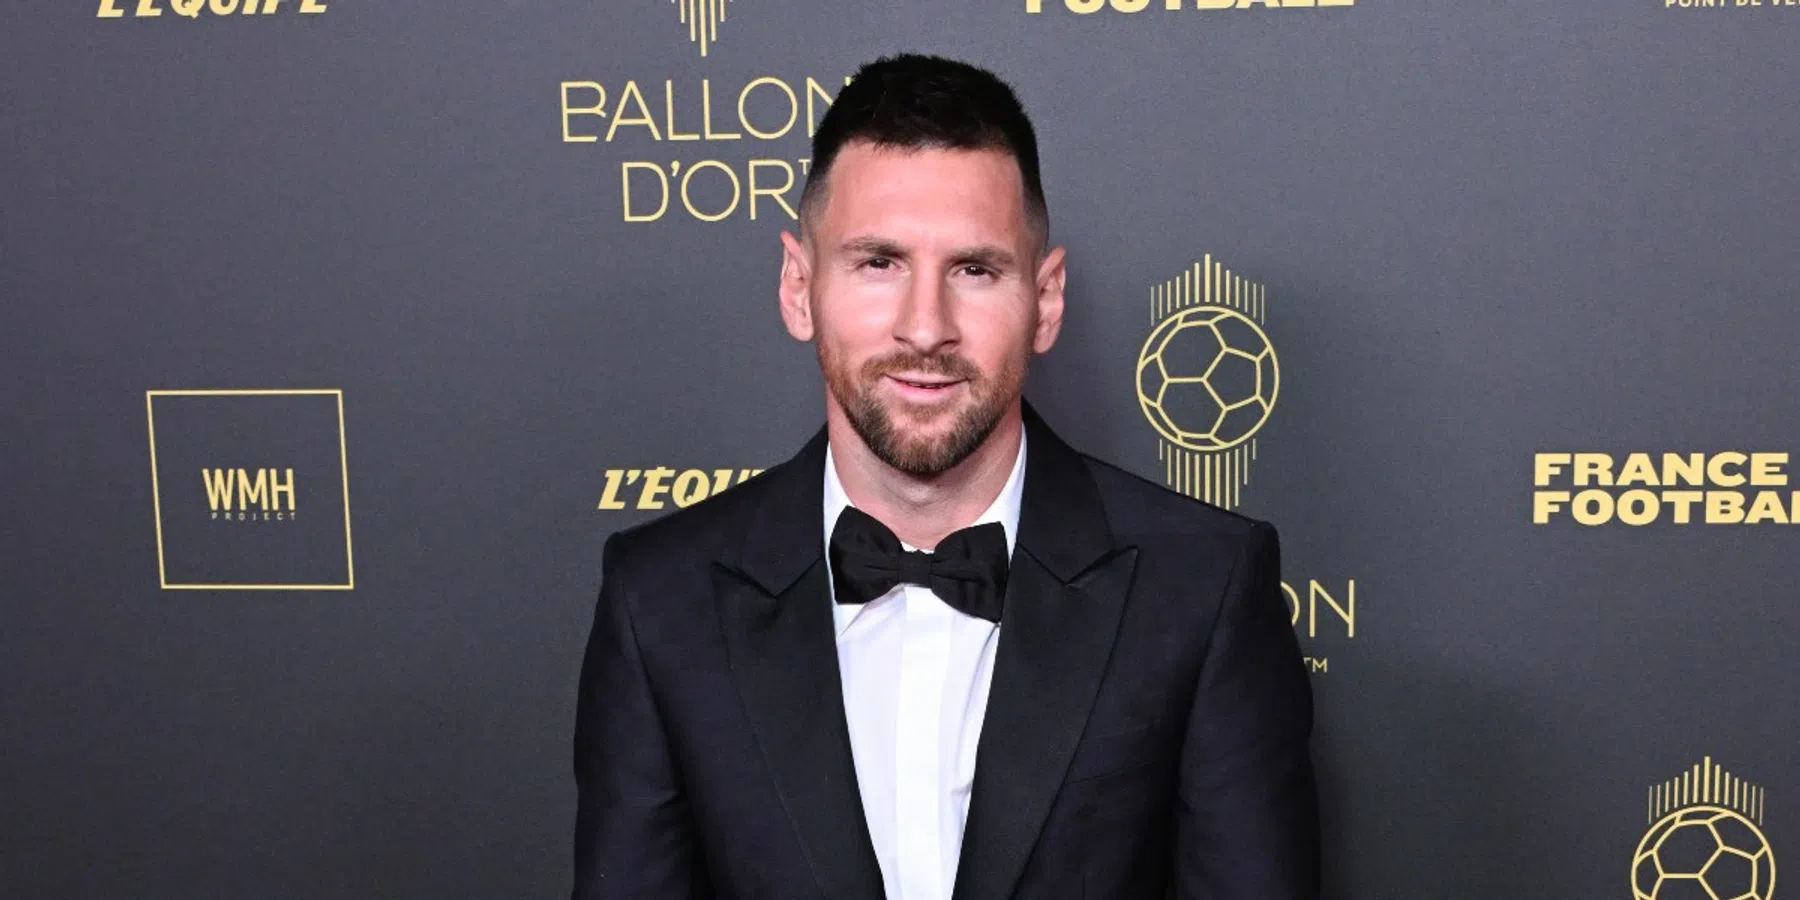 Buitenspel: MVV krijgt lachers op de hand op social media met Messi-vergelijking